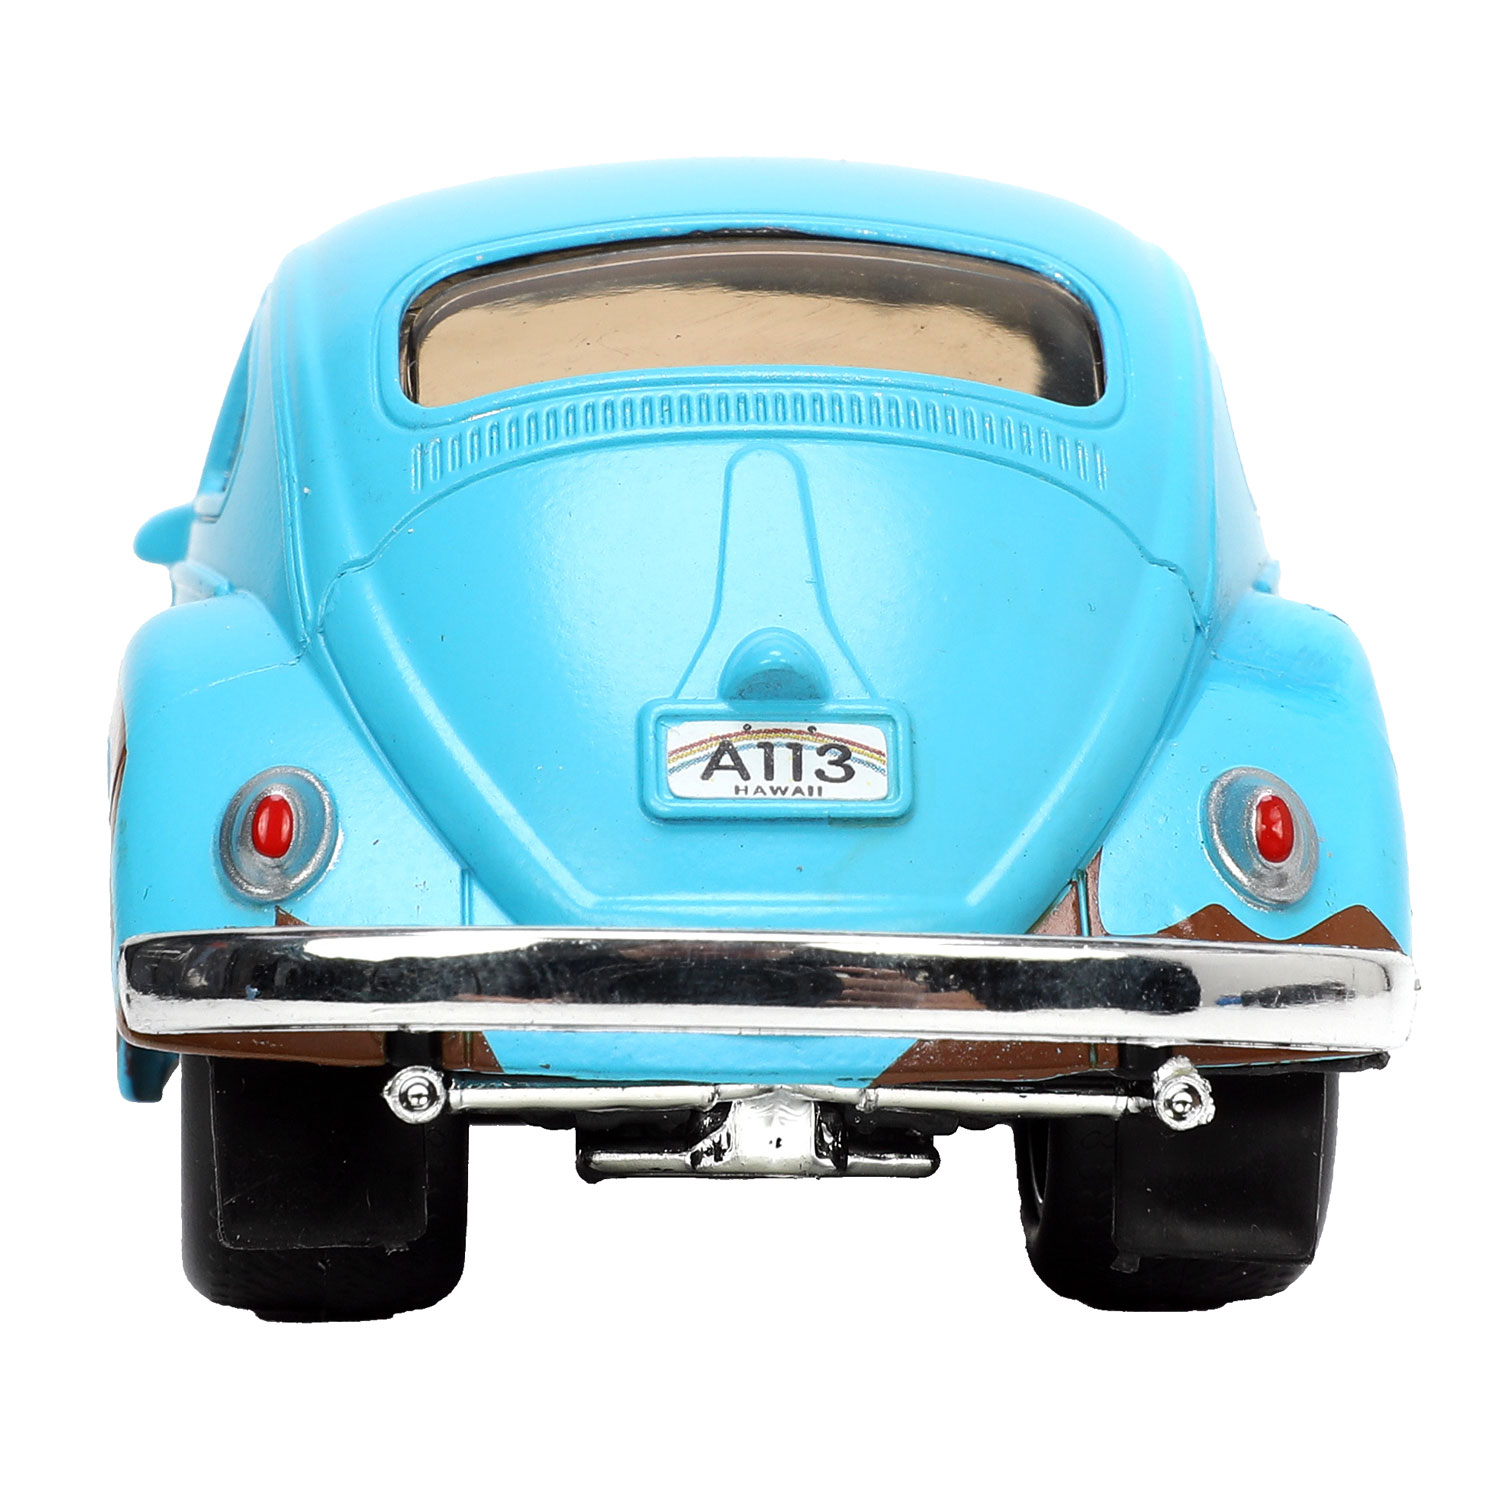 Jada Die-Cast Lilo & Stitch 1959 Volkswagen Coccinelle 1:32